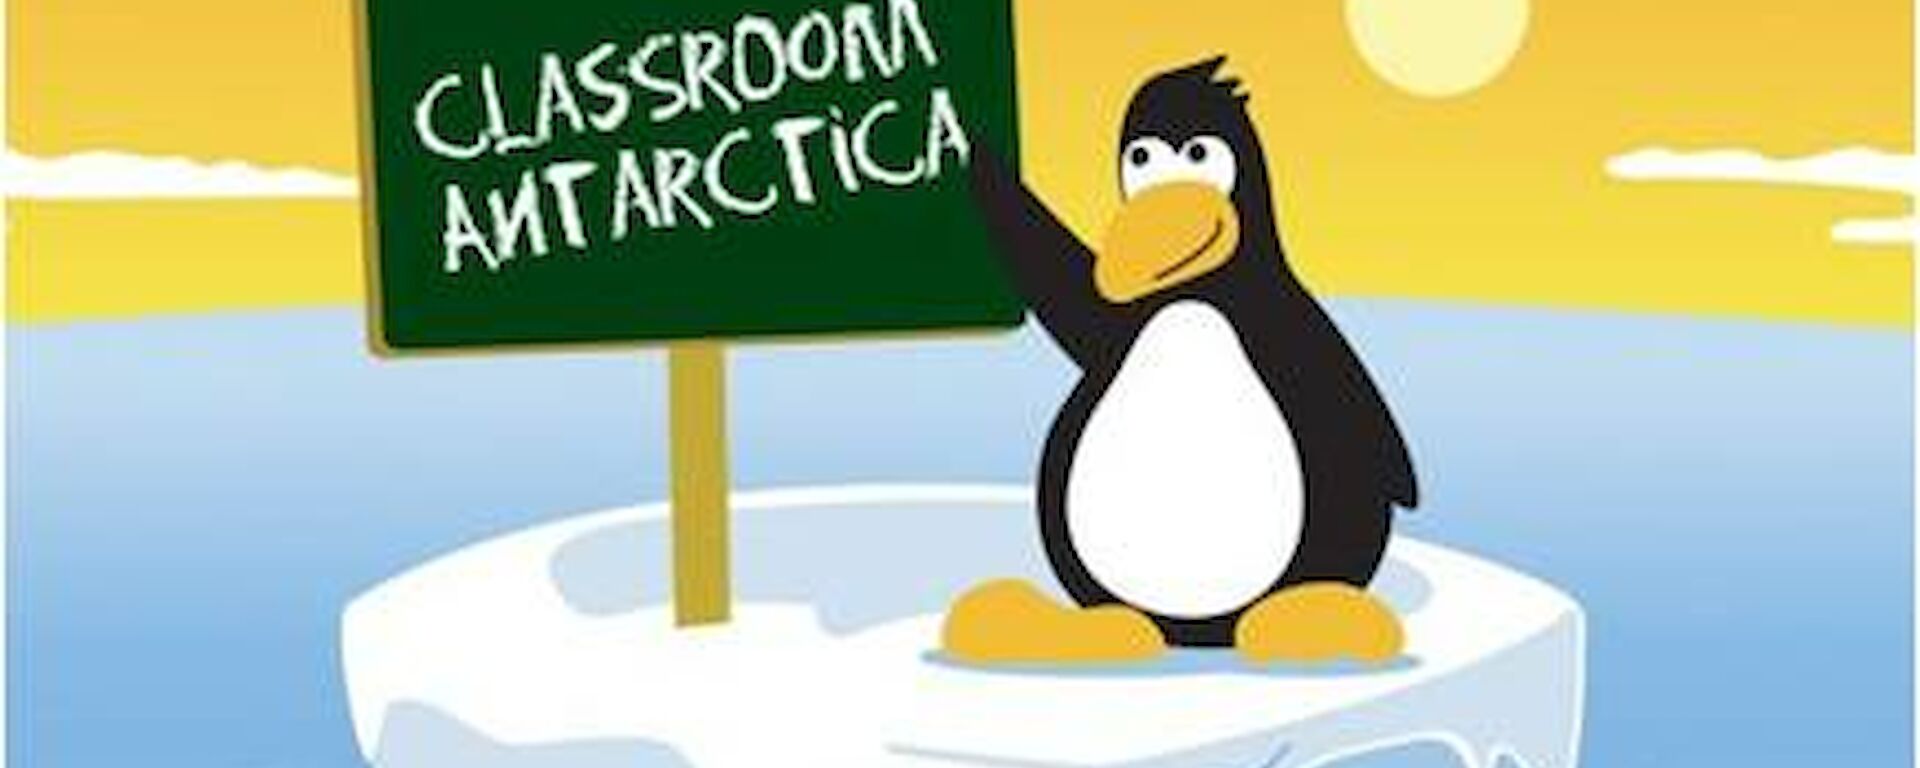 Classroom Antarctica Logo